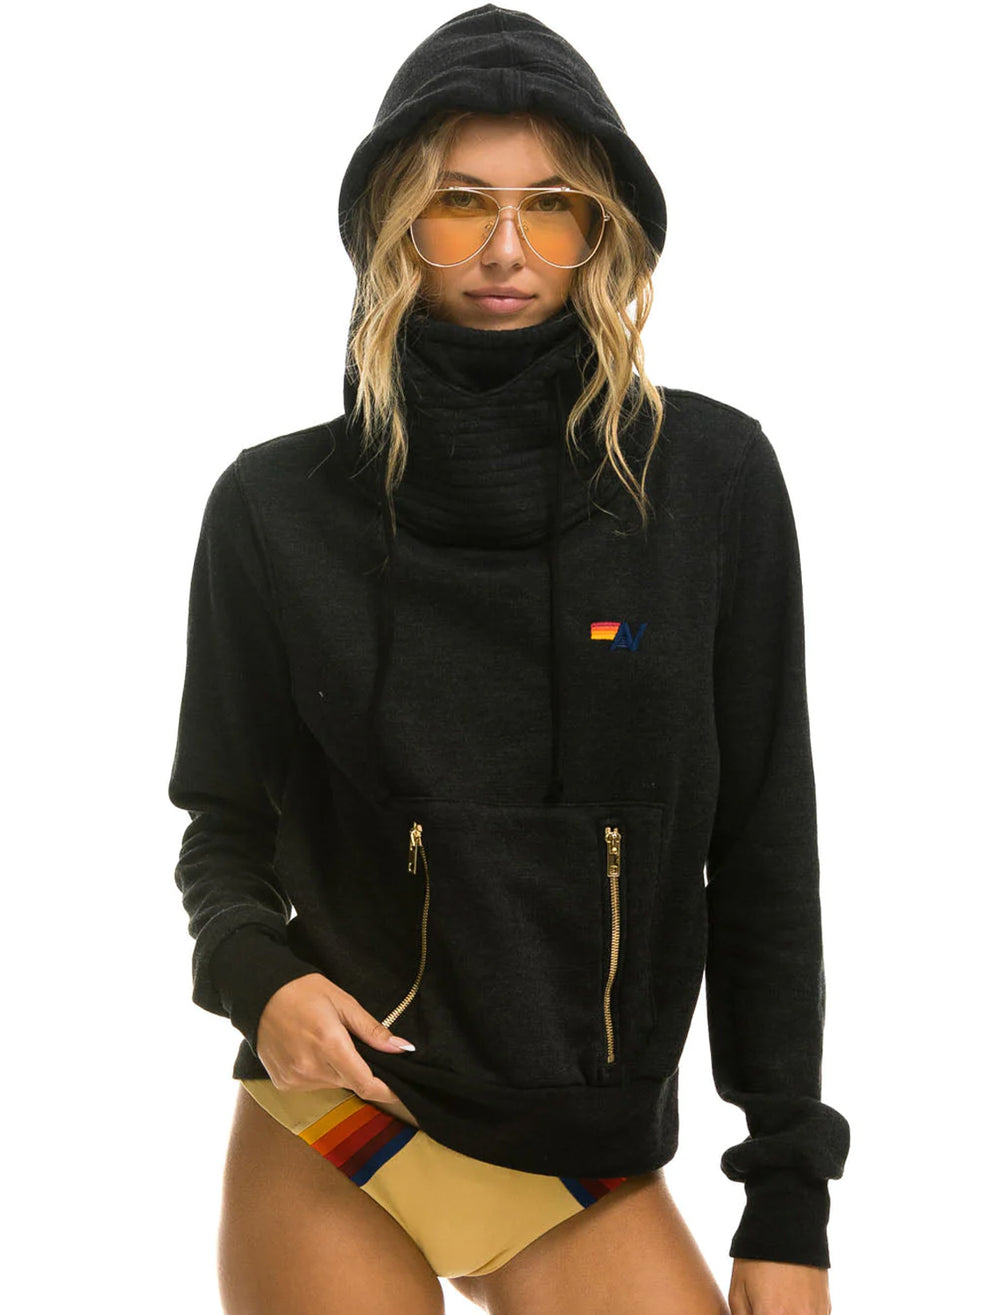 Model wearing Aviator Nation's ninja pullover in black.